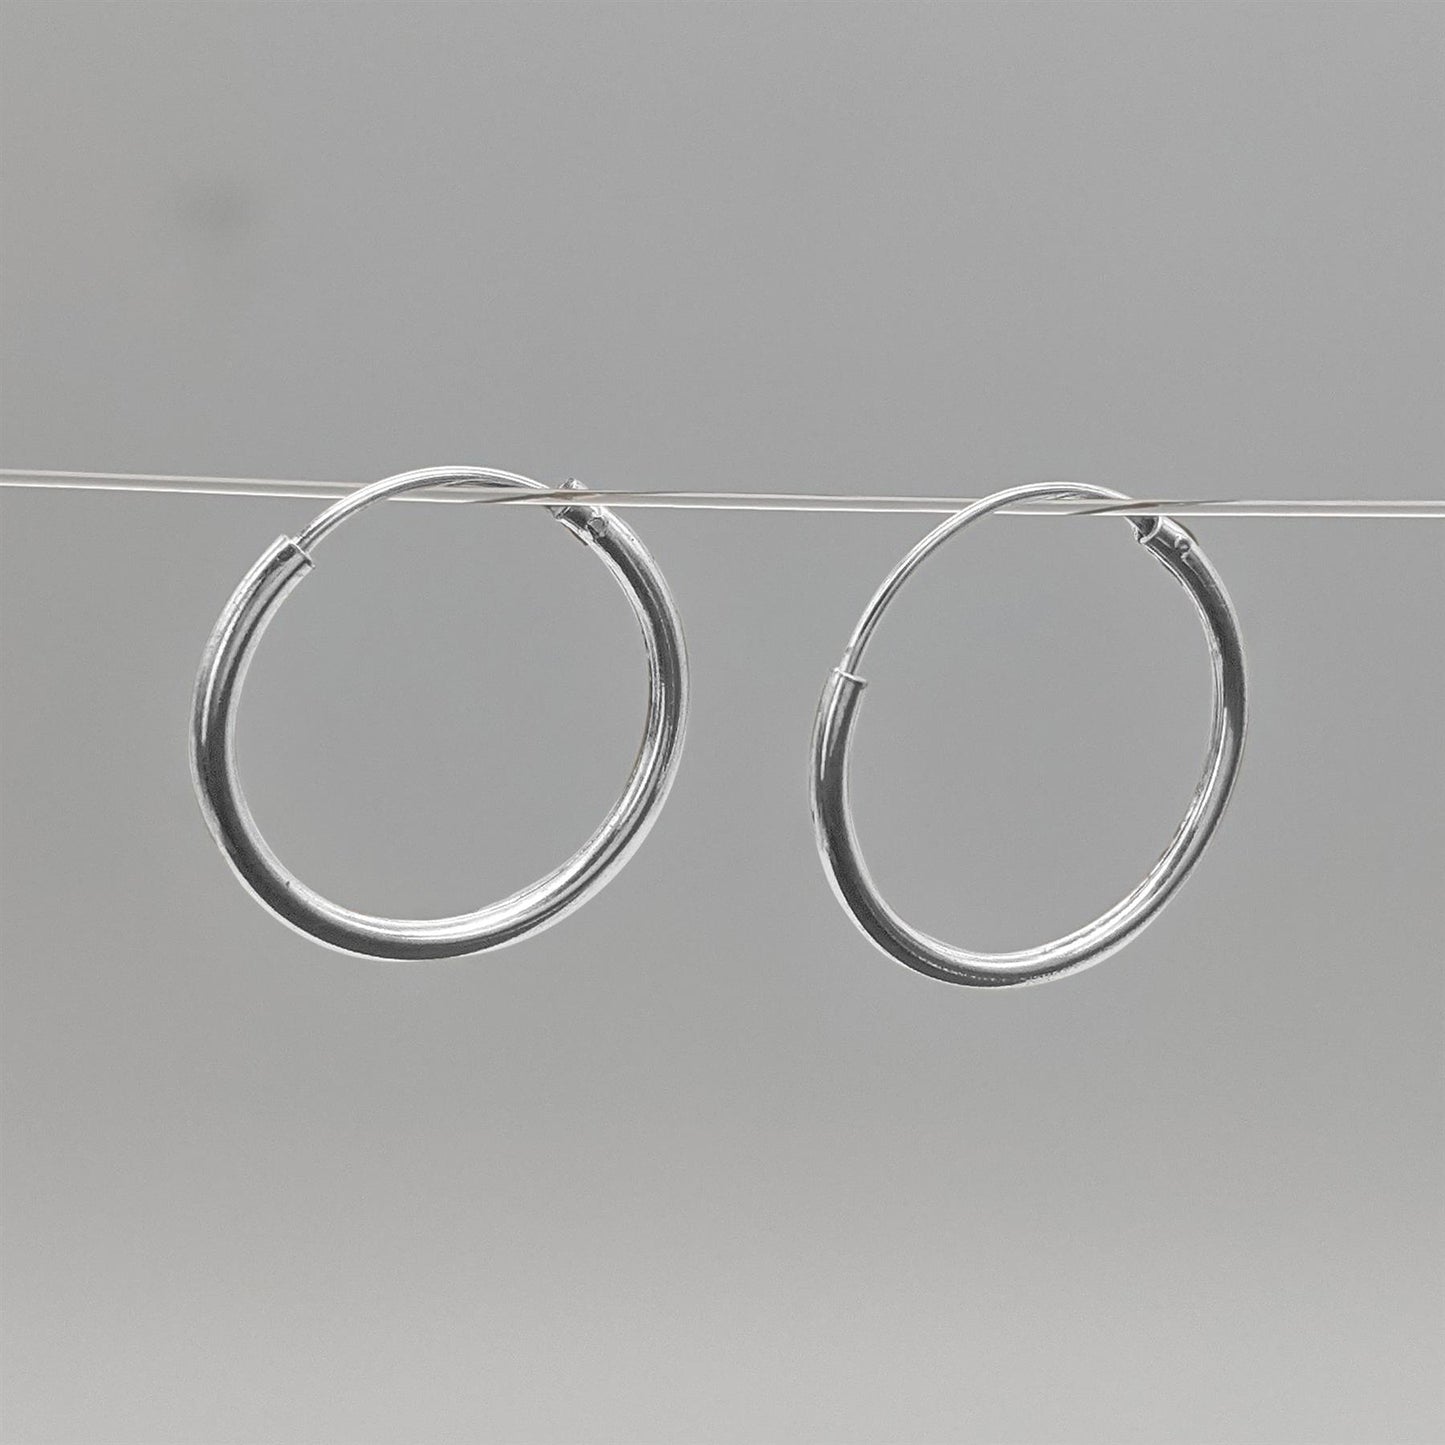 Sterling Silver Small 16 mm Thin Hoops Hinged Hoop Earrings